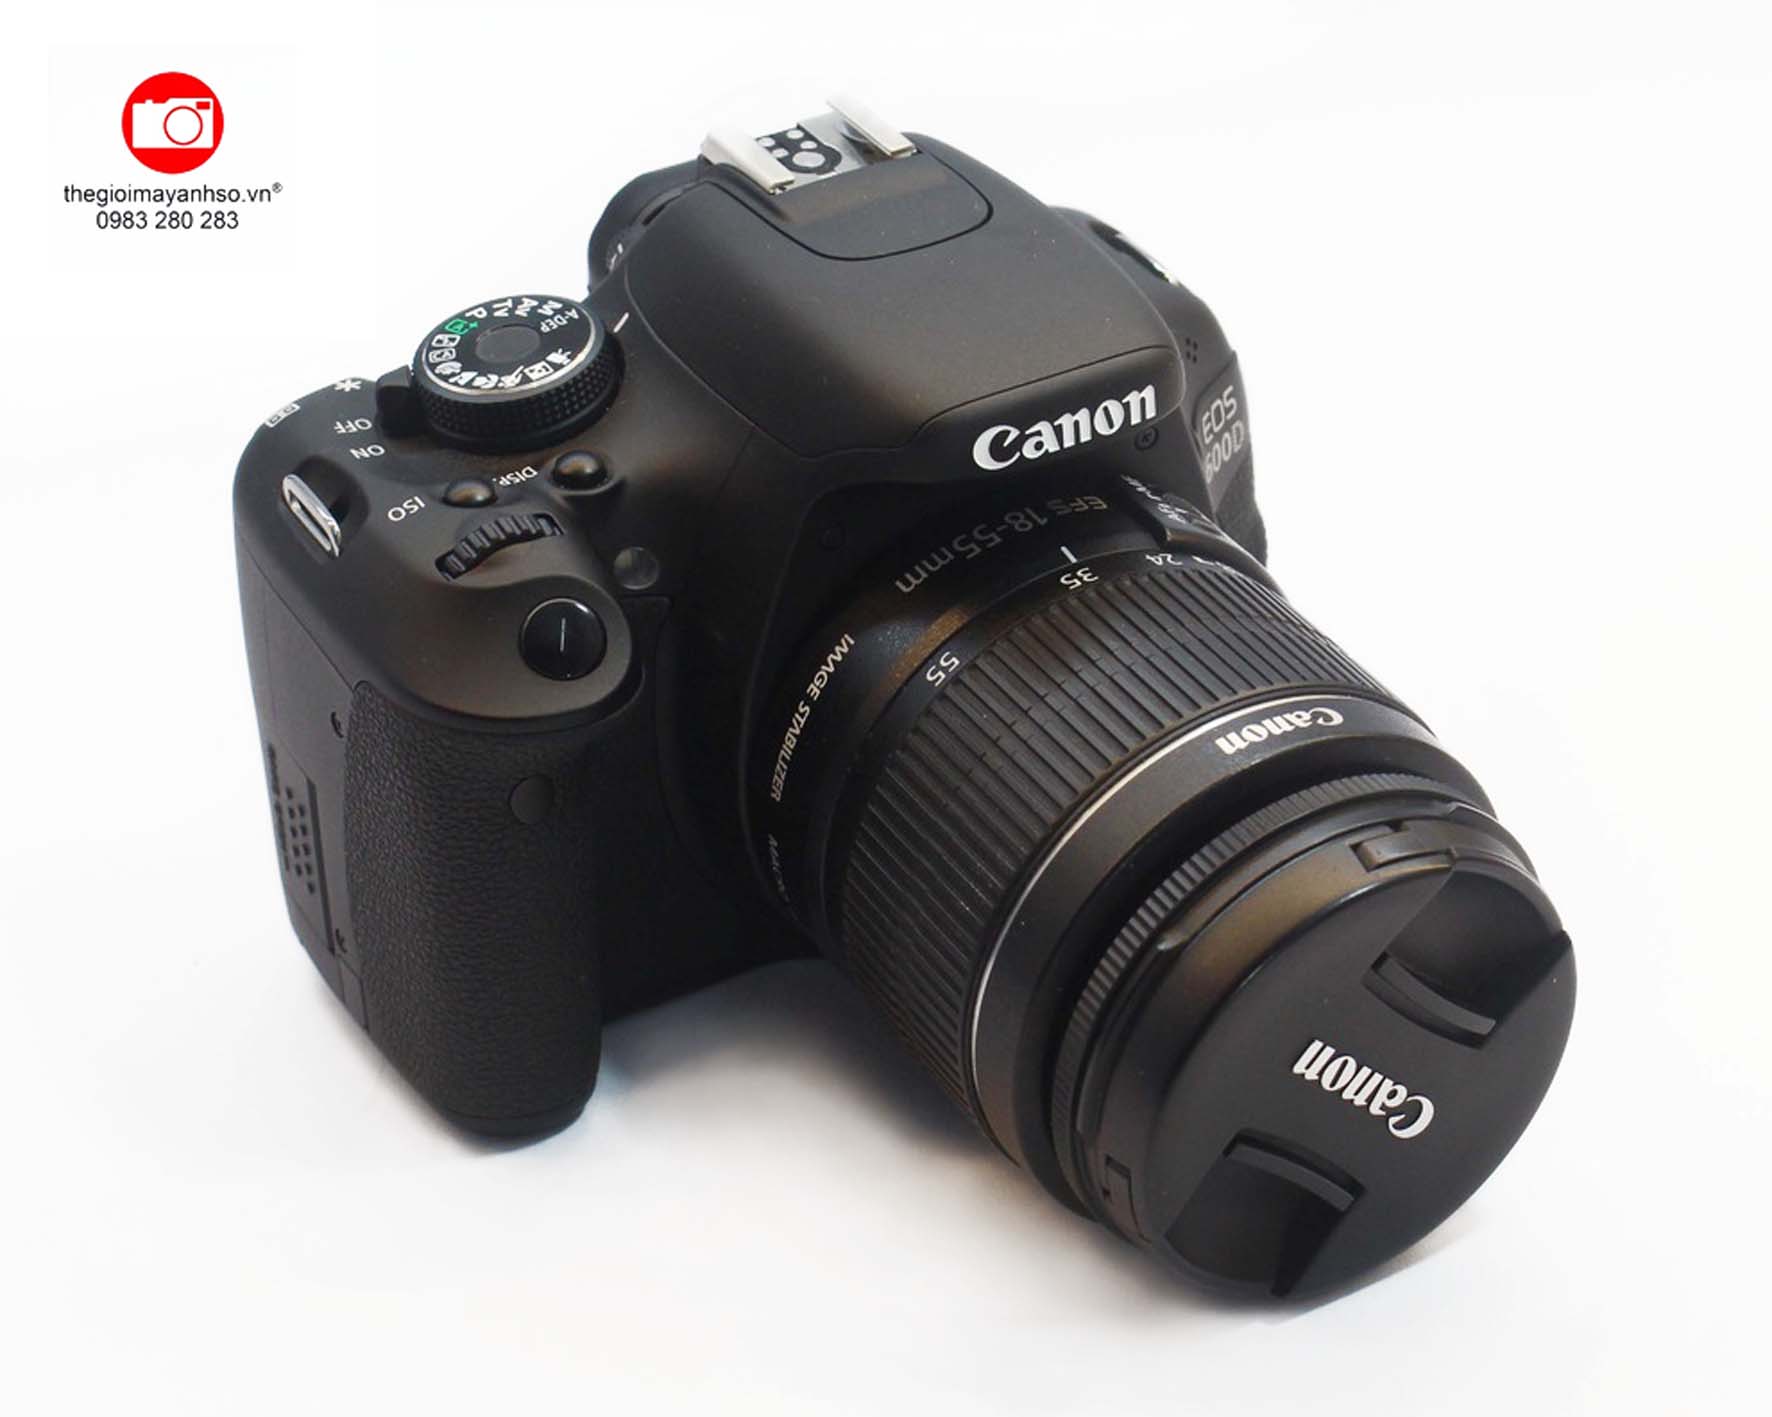 Canon EOS Kiss X5/600D là một sản phẩm đáng để bạn khám phá. Với tính năng đầy đủ, cảm biến lớn và chất lượng hình ảnh tuyệt vời, chiếc máy ảnh này sẽ giúp bạn ghi lại những kỷ niệm đáng nhớ trong cuộc sống.